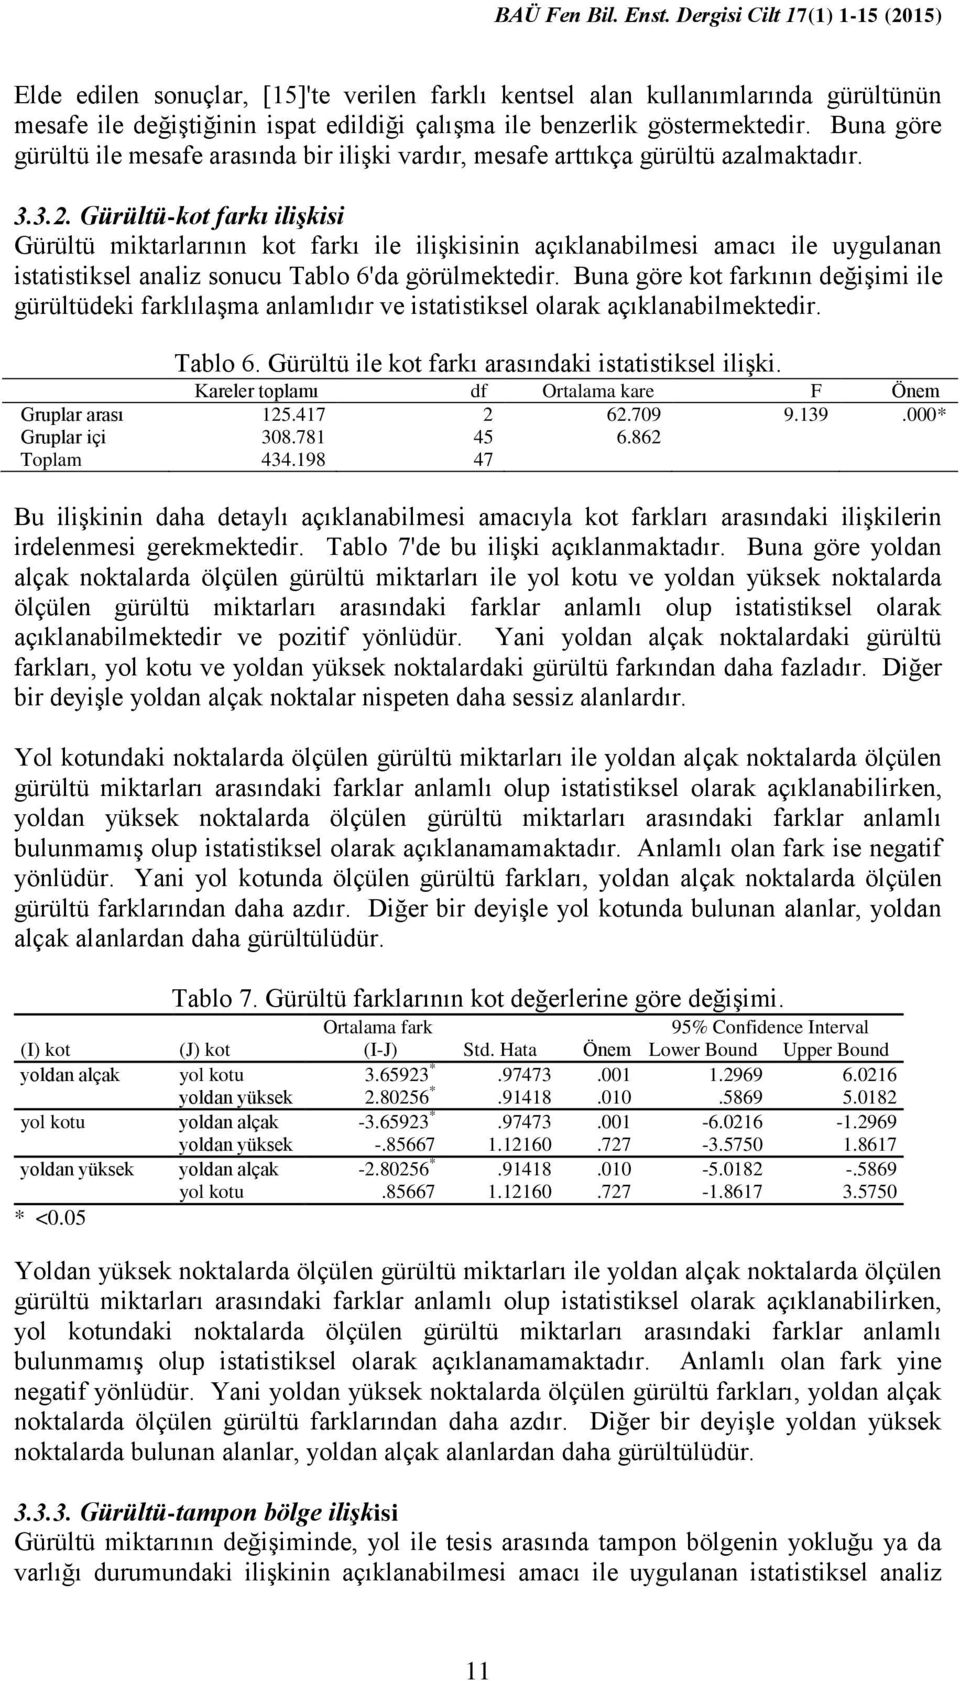 Gürültü-kot farkı ilişkisi Gürültü miktarlarının kot farkı ile ilişkisinin açıklanabilmesi amacı ile uygulanan istatistiksel analiz sonucu Tablo 6'da görülmektedir.